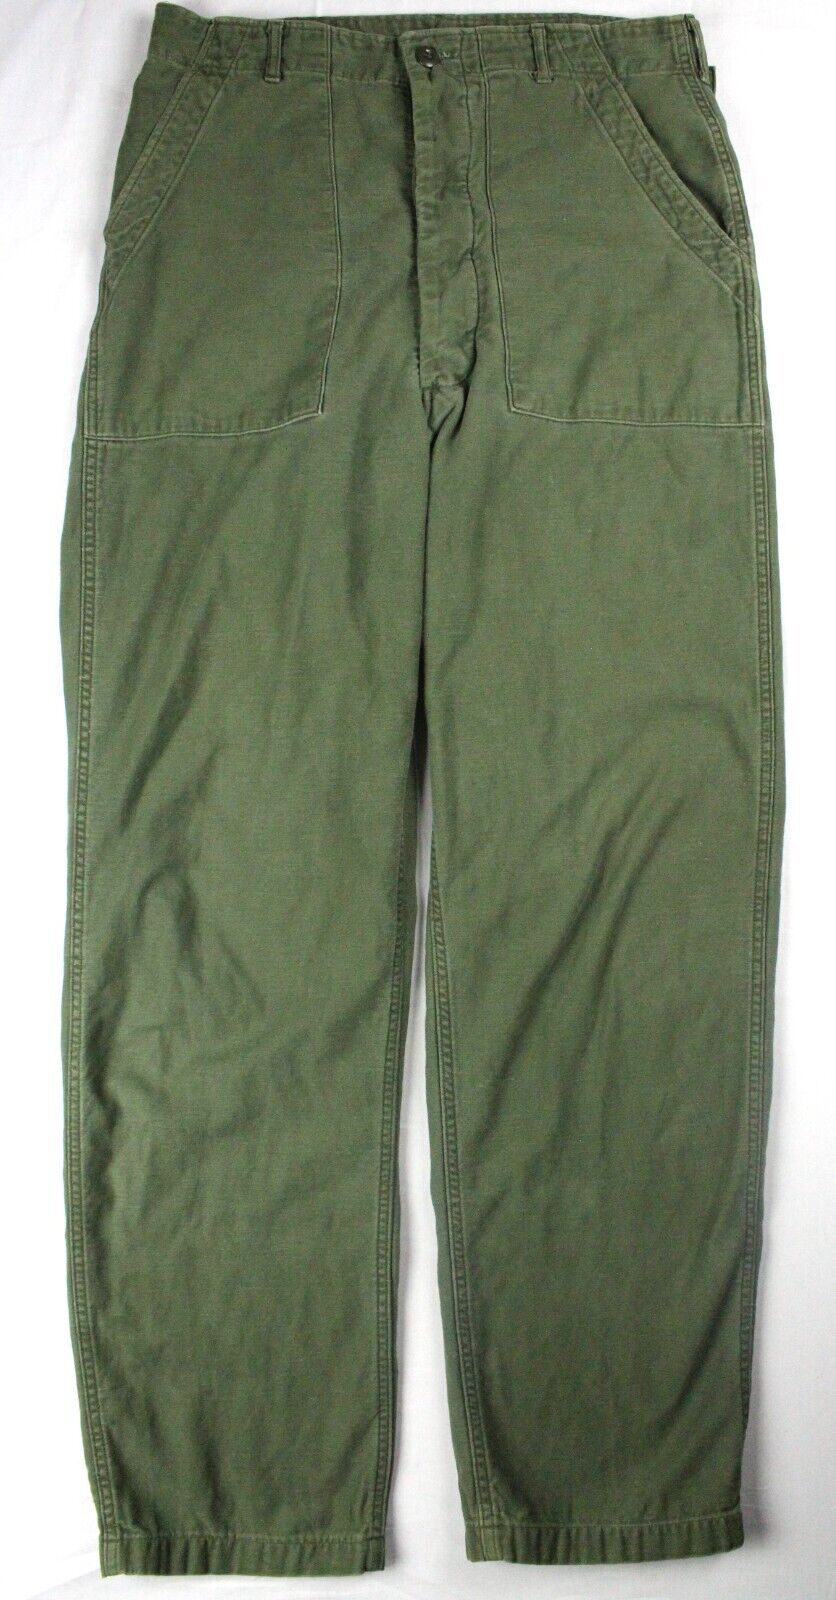 Vintage 1977 Cotton Sateen OG-107 Utility Trousers Pants Measures 32x33 Vietnam